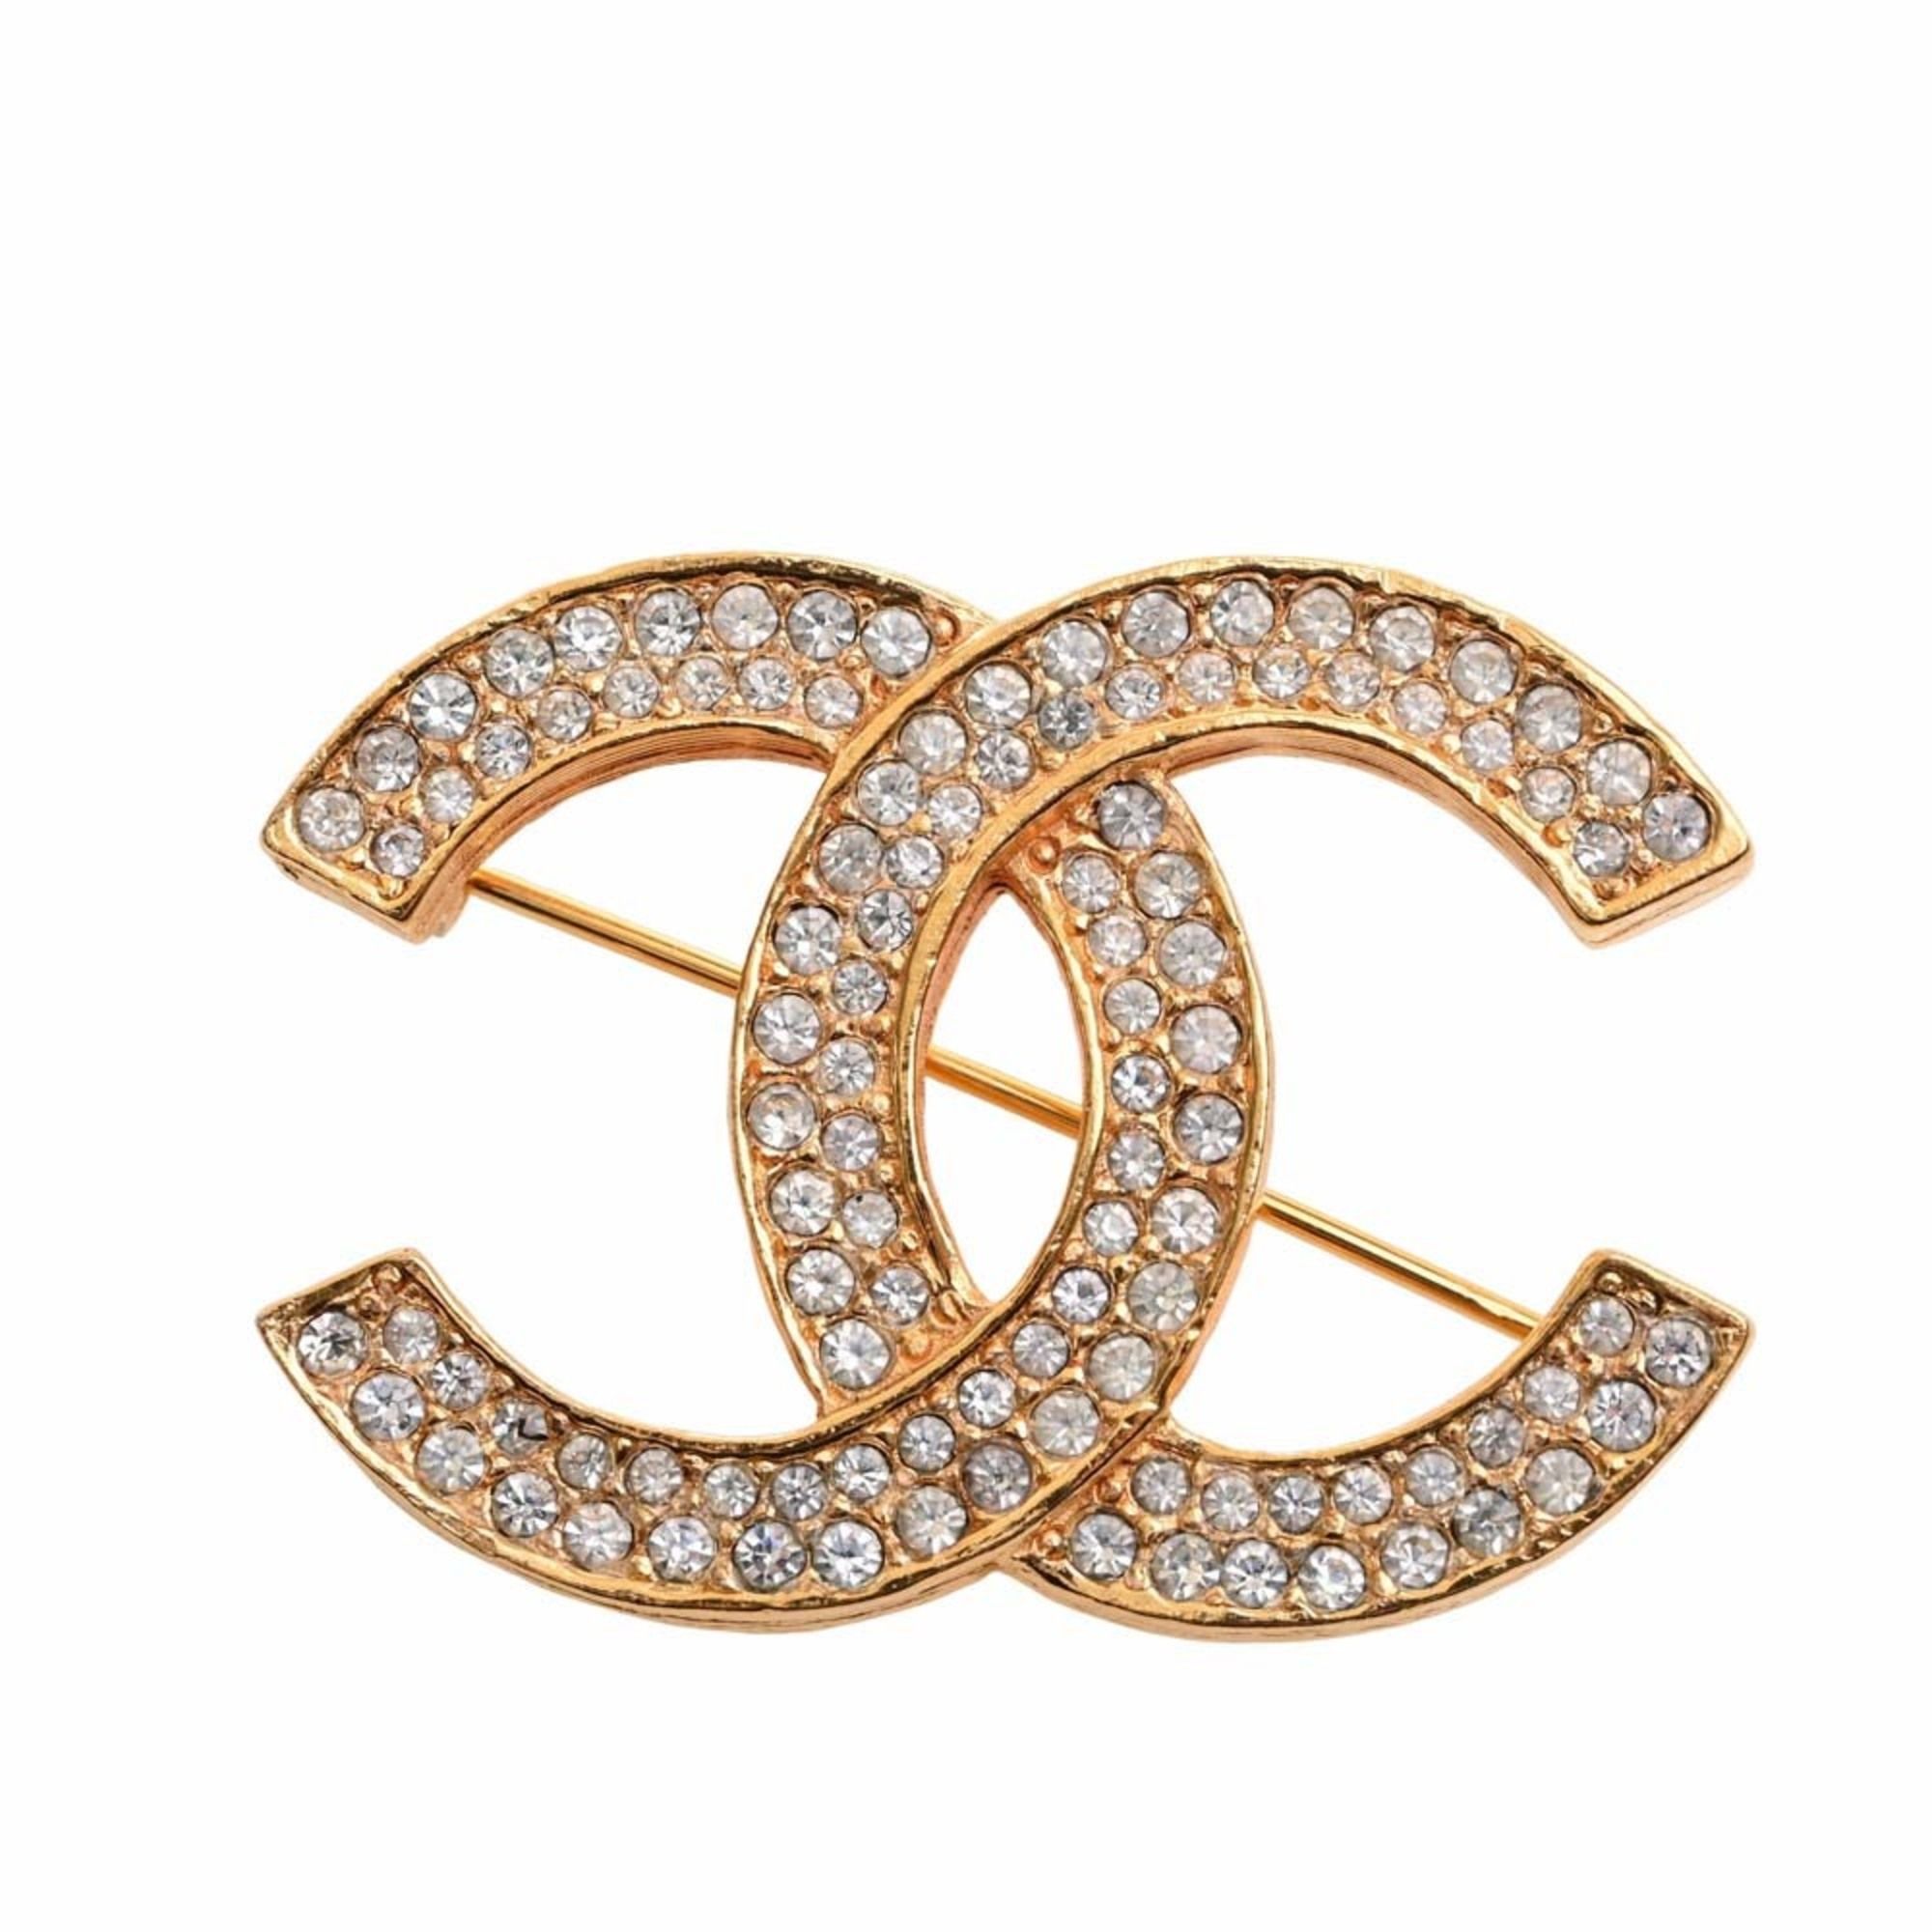 Chanel Chanel Coco Mark brooch